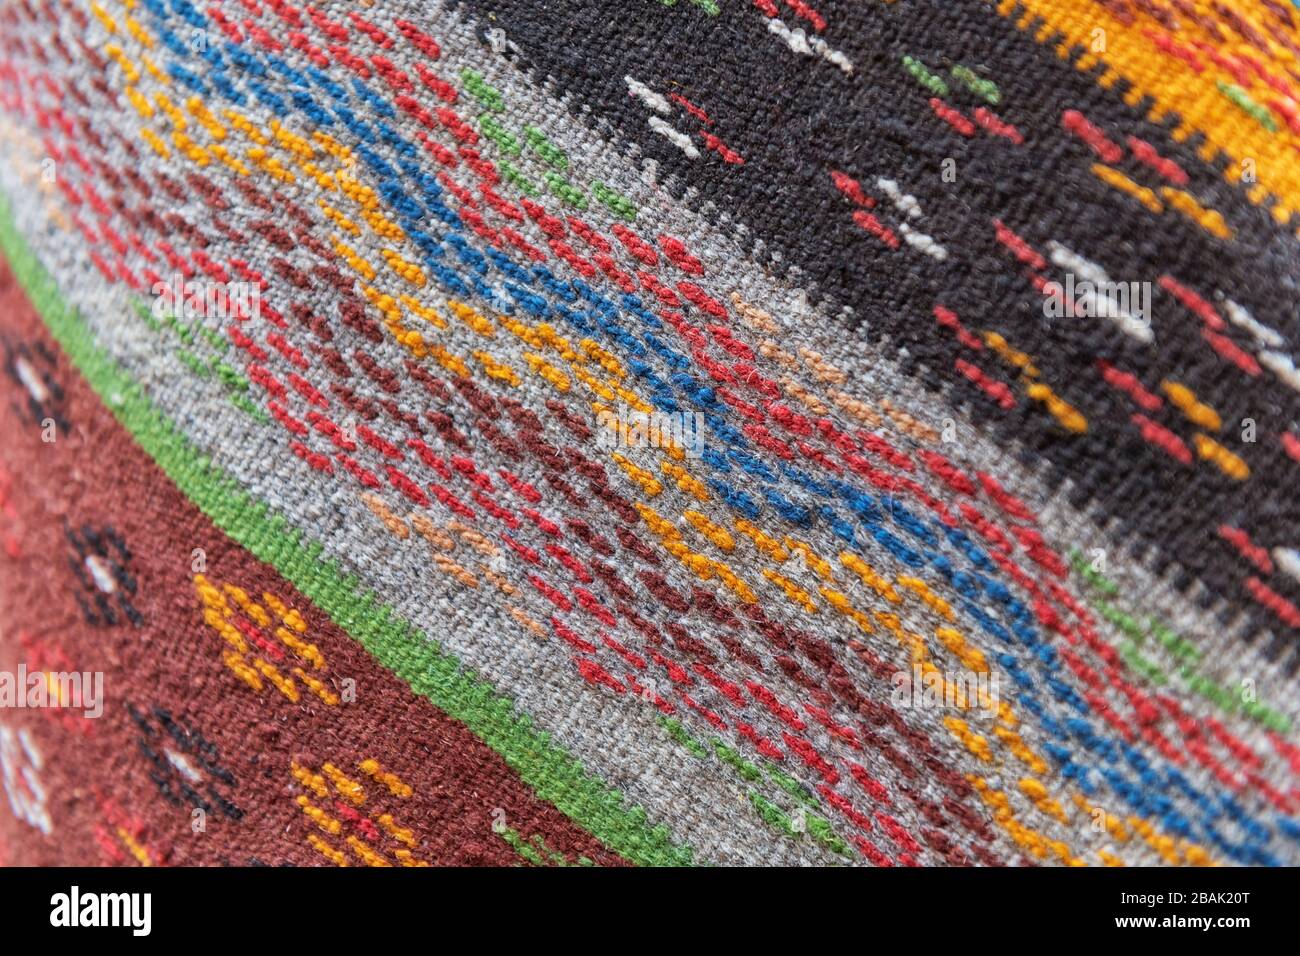 Marokkanischer Teppich im traditionellen Berberdesign. Hintergrundbild im marokkanischen Berberdesign. Stockfoto